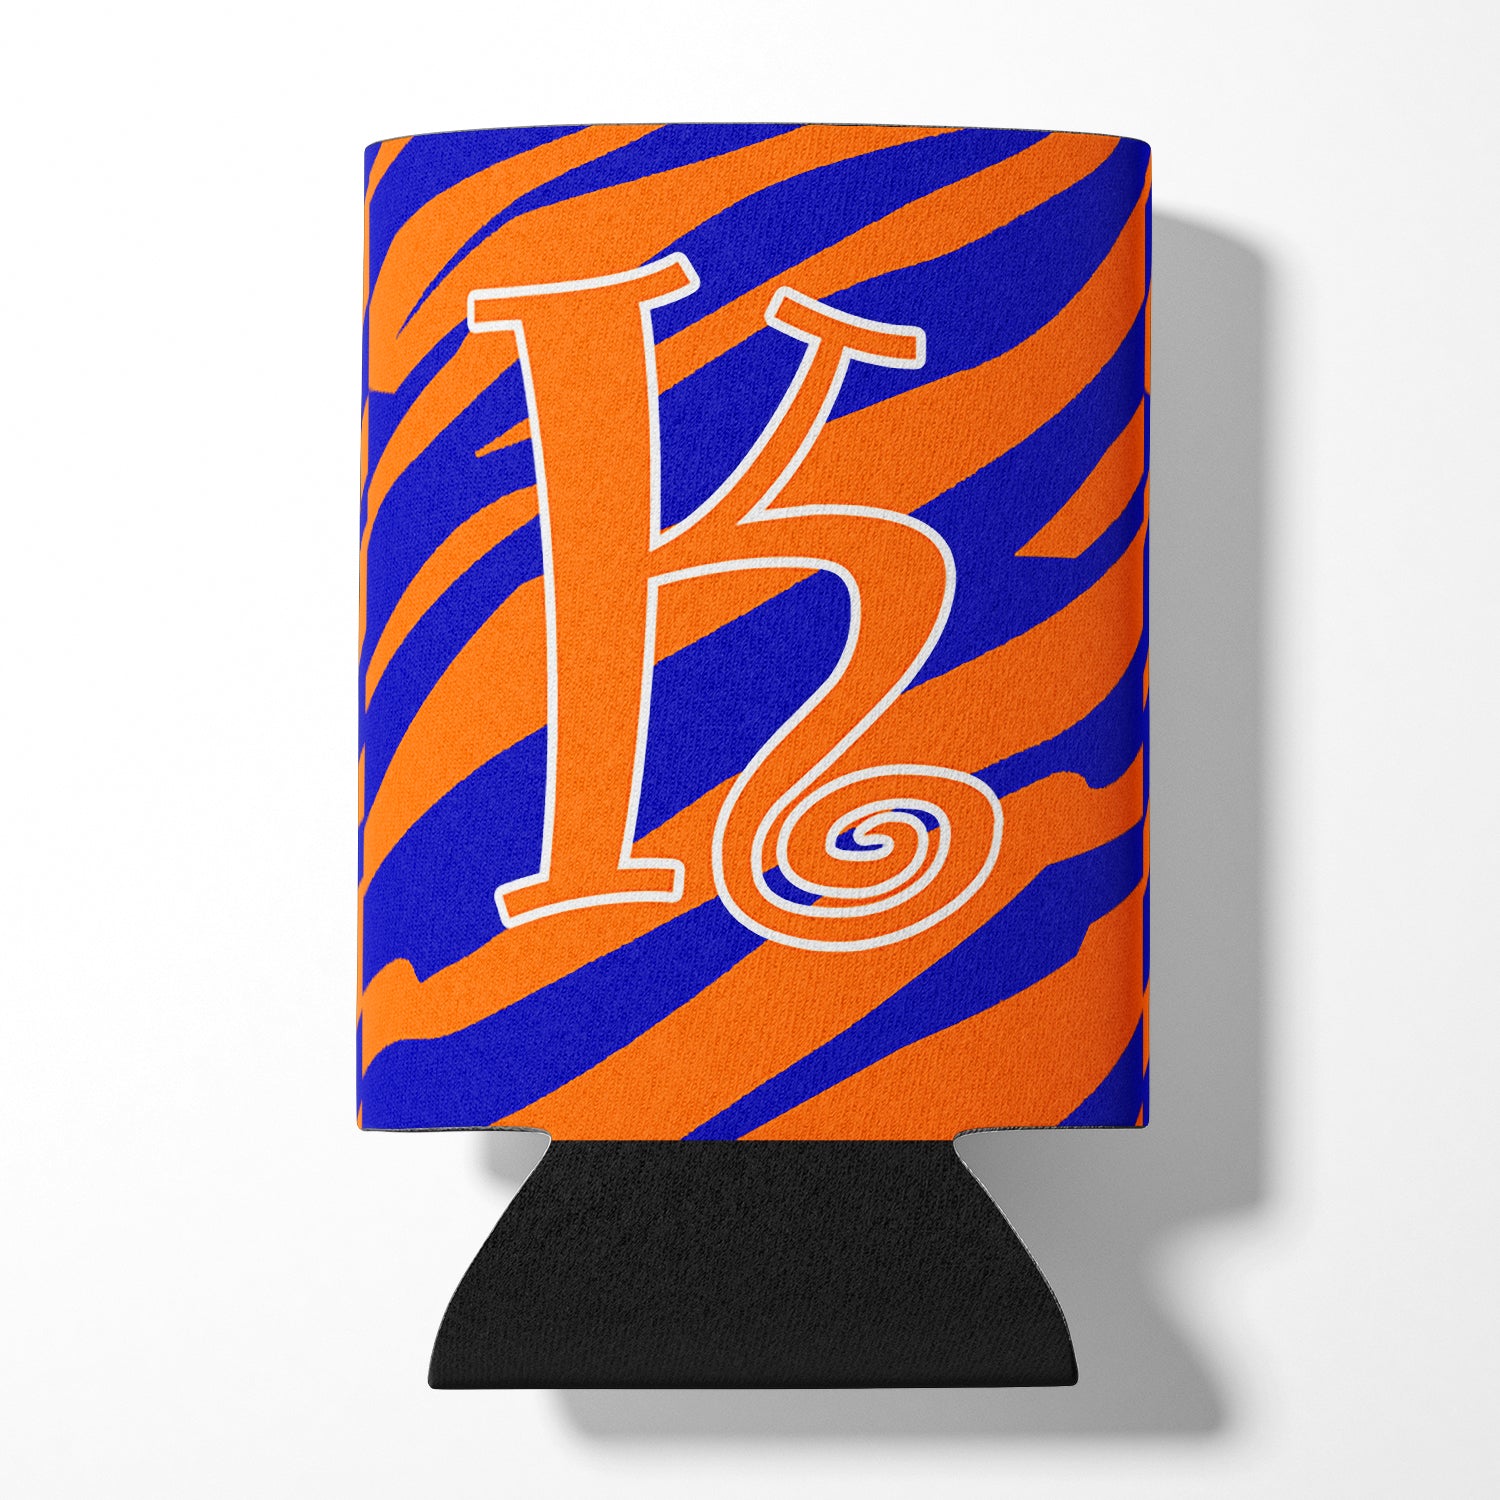 Monogramme initial de la lettre K - Tiger Stripe Blue and Orange Can Beverage Insulator Hugger